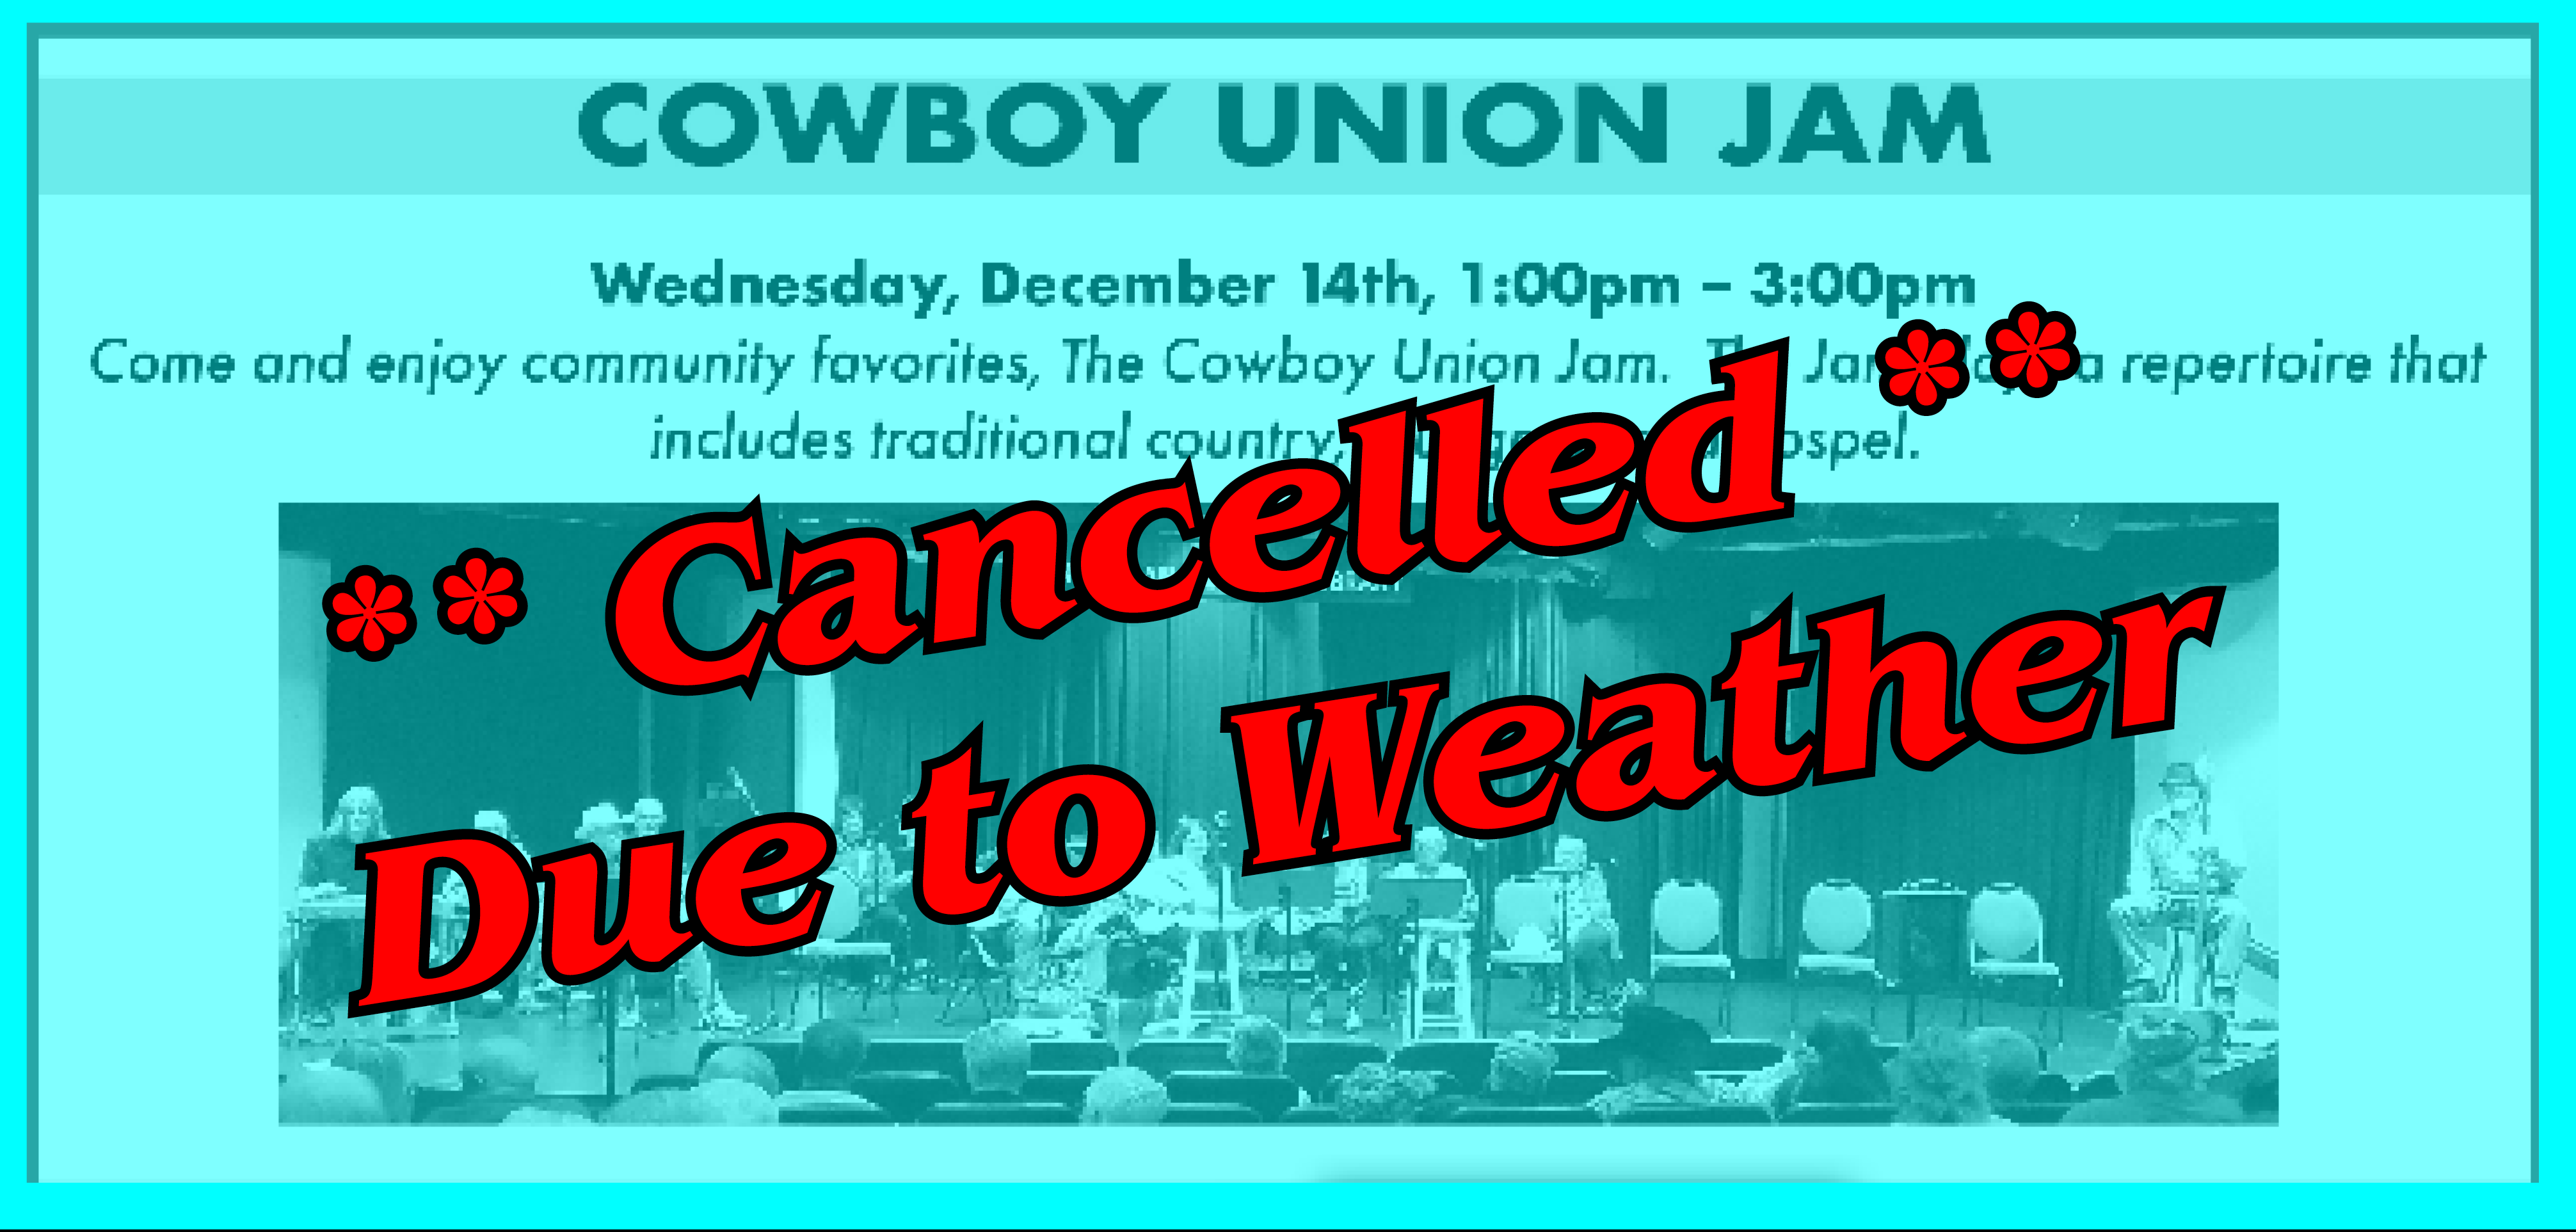 cowboy union jam cancelled